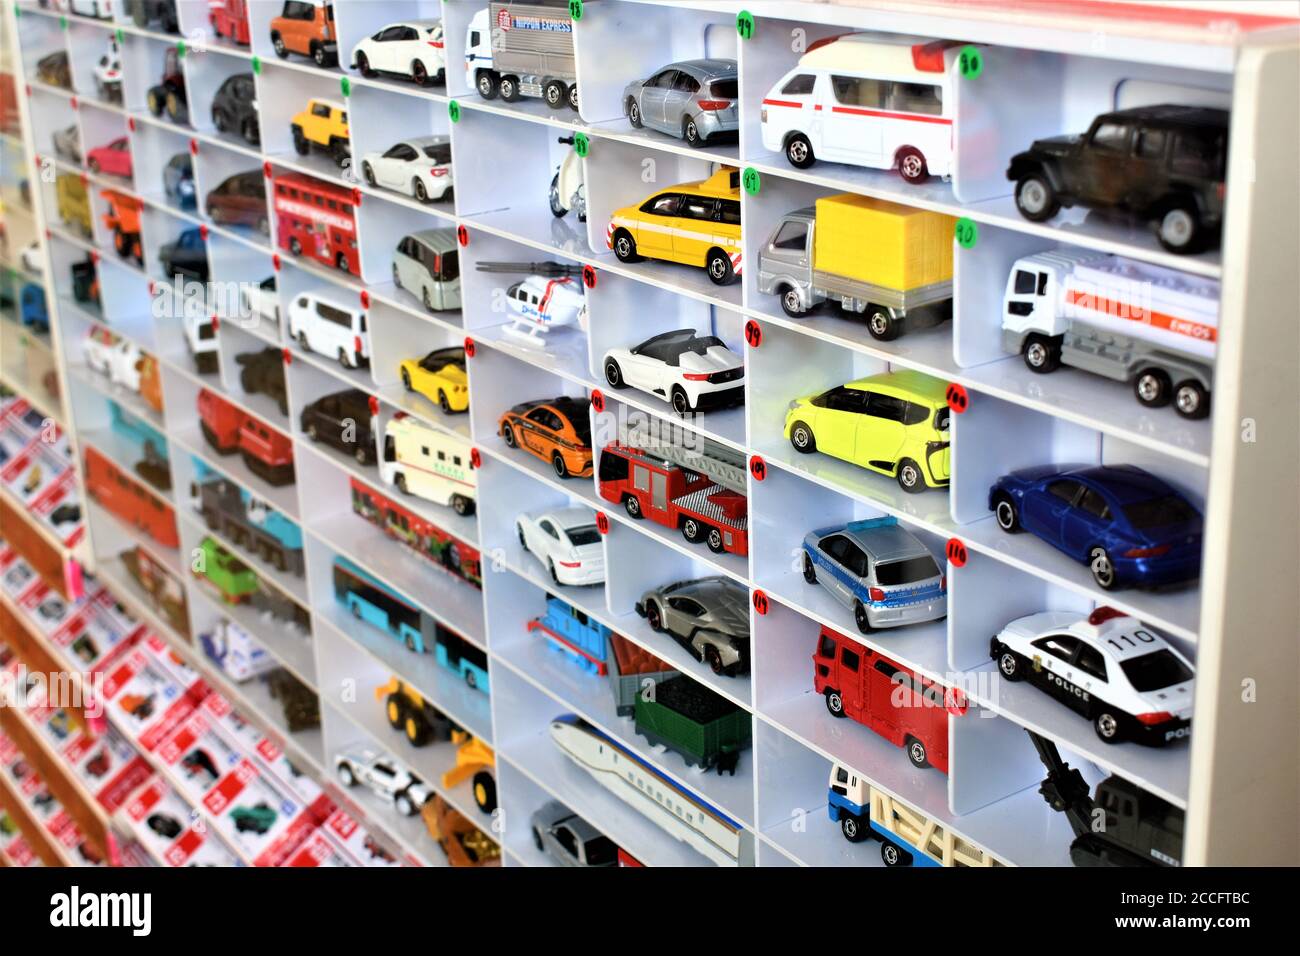 Les modèles de voitures de série sont présentés en vente sur une étagère dans un magasin de jouets Banque D'Images